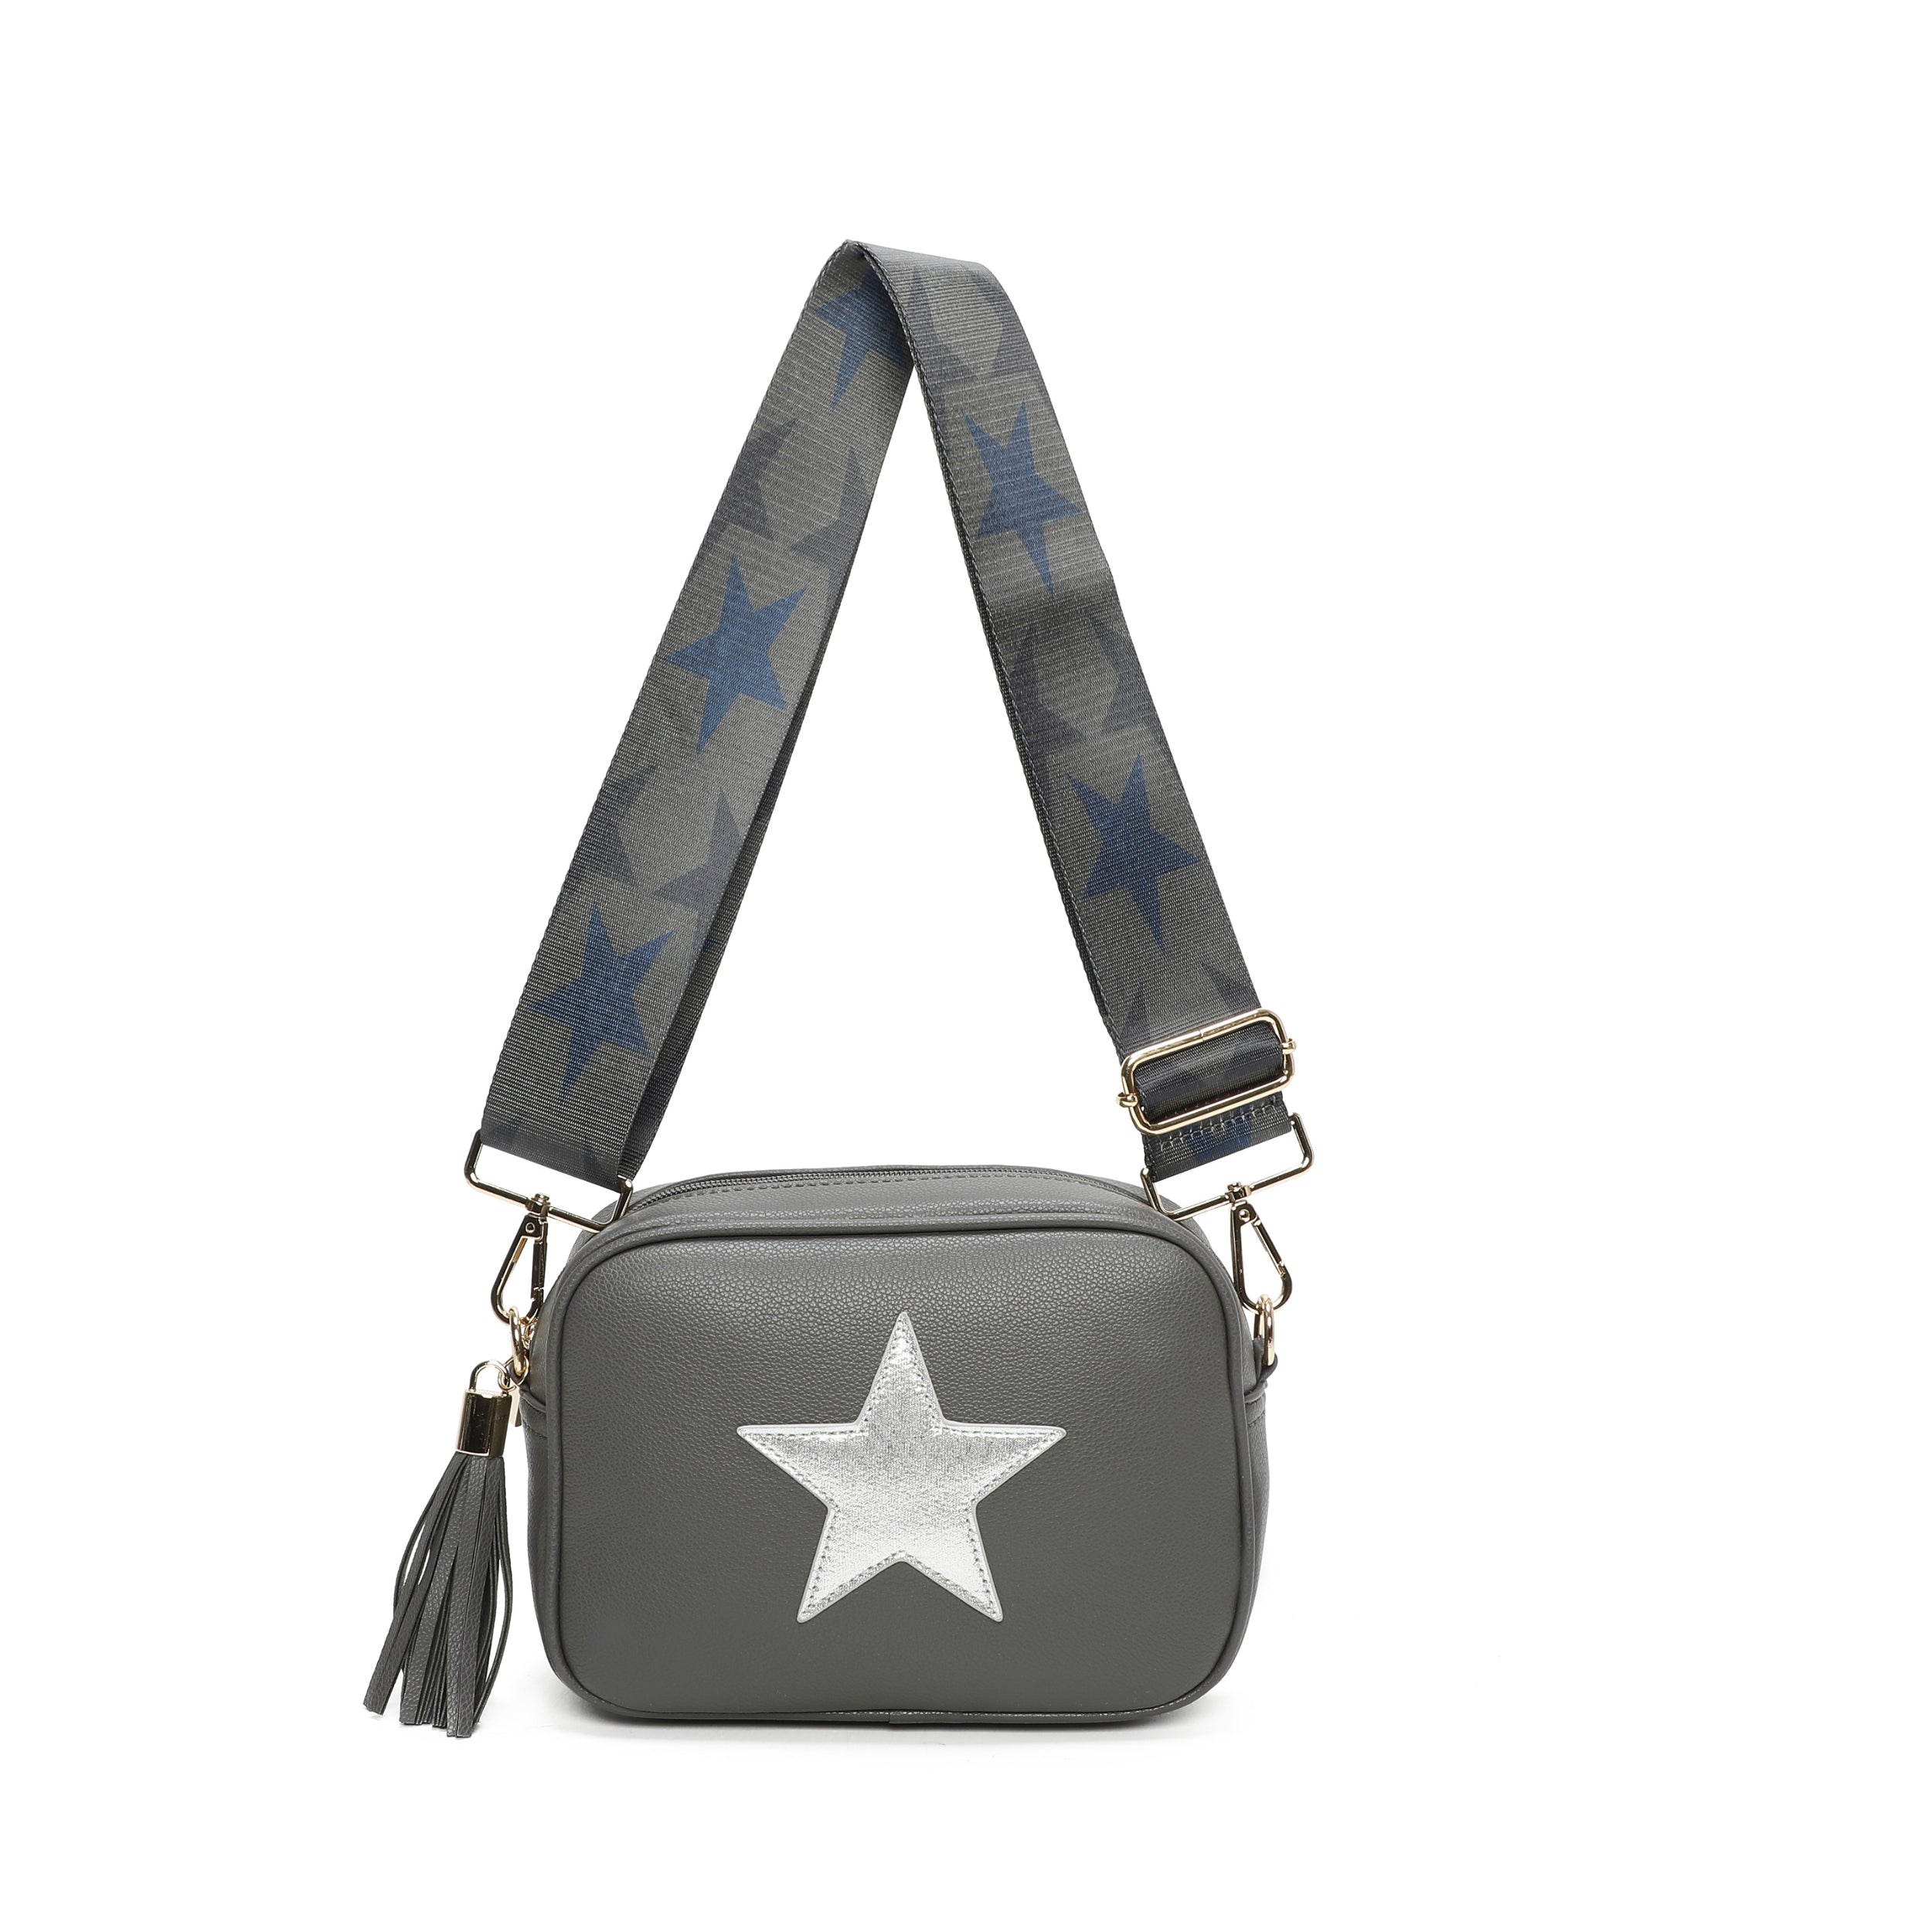 Star Crossbody Bag